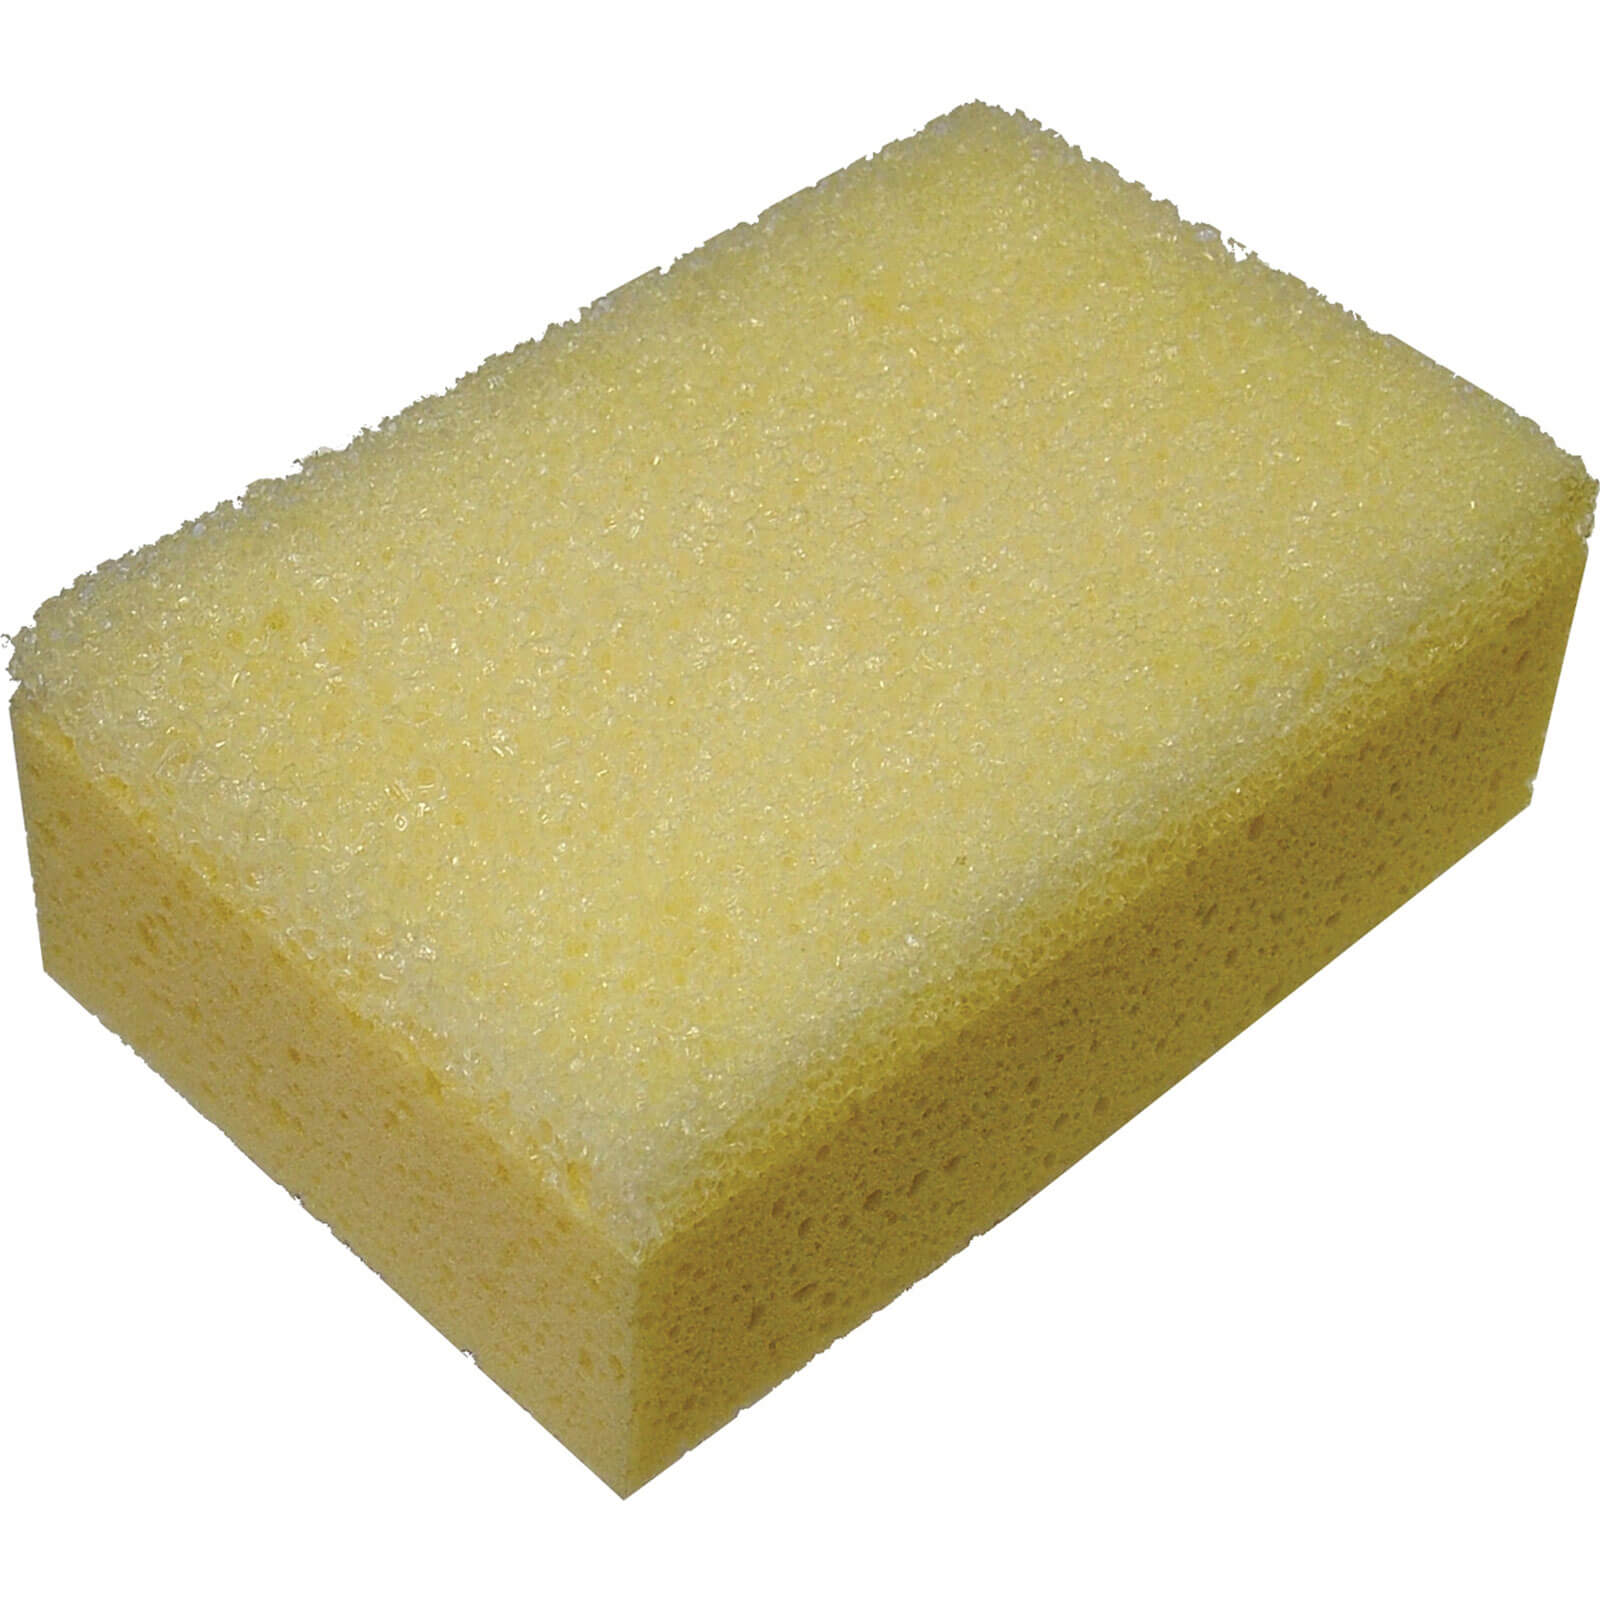 Faithfull Professional Tile Grouting Sponge